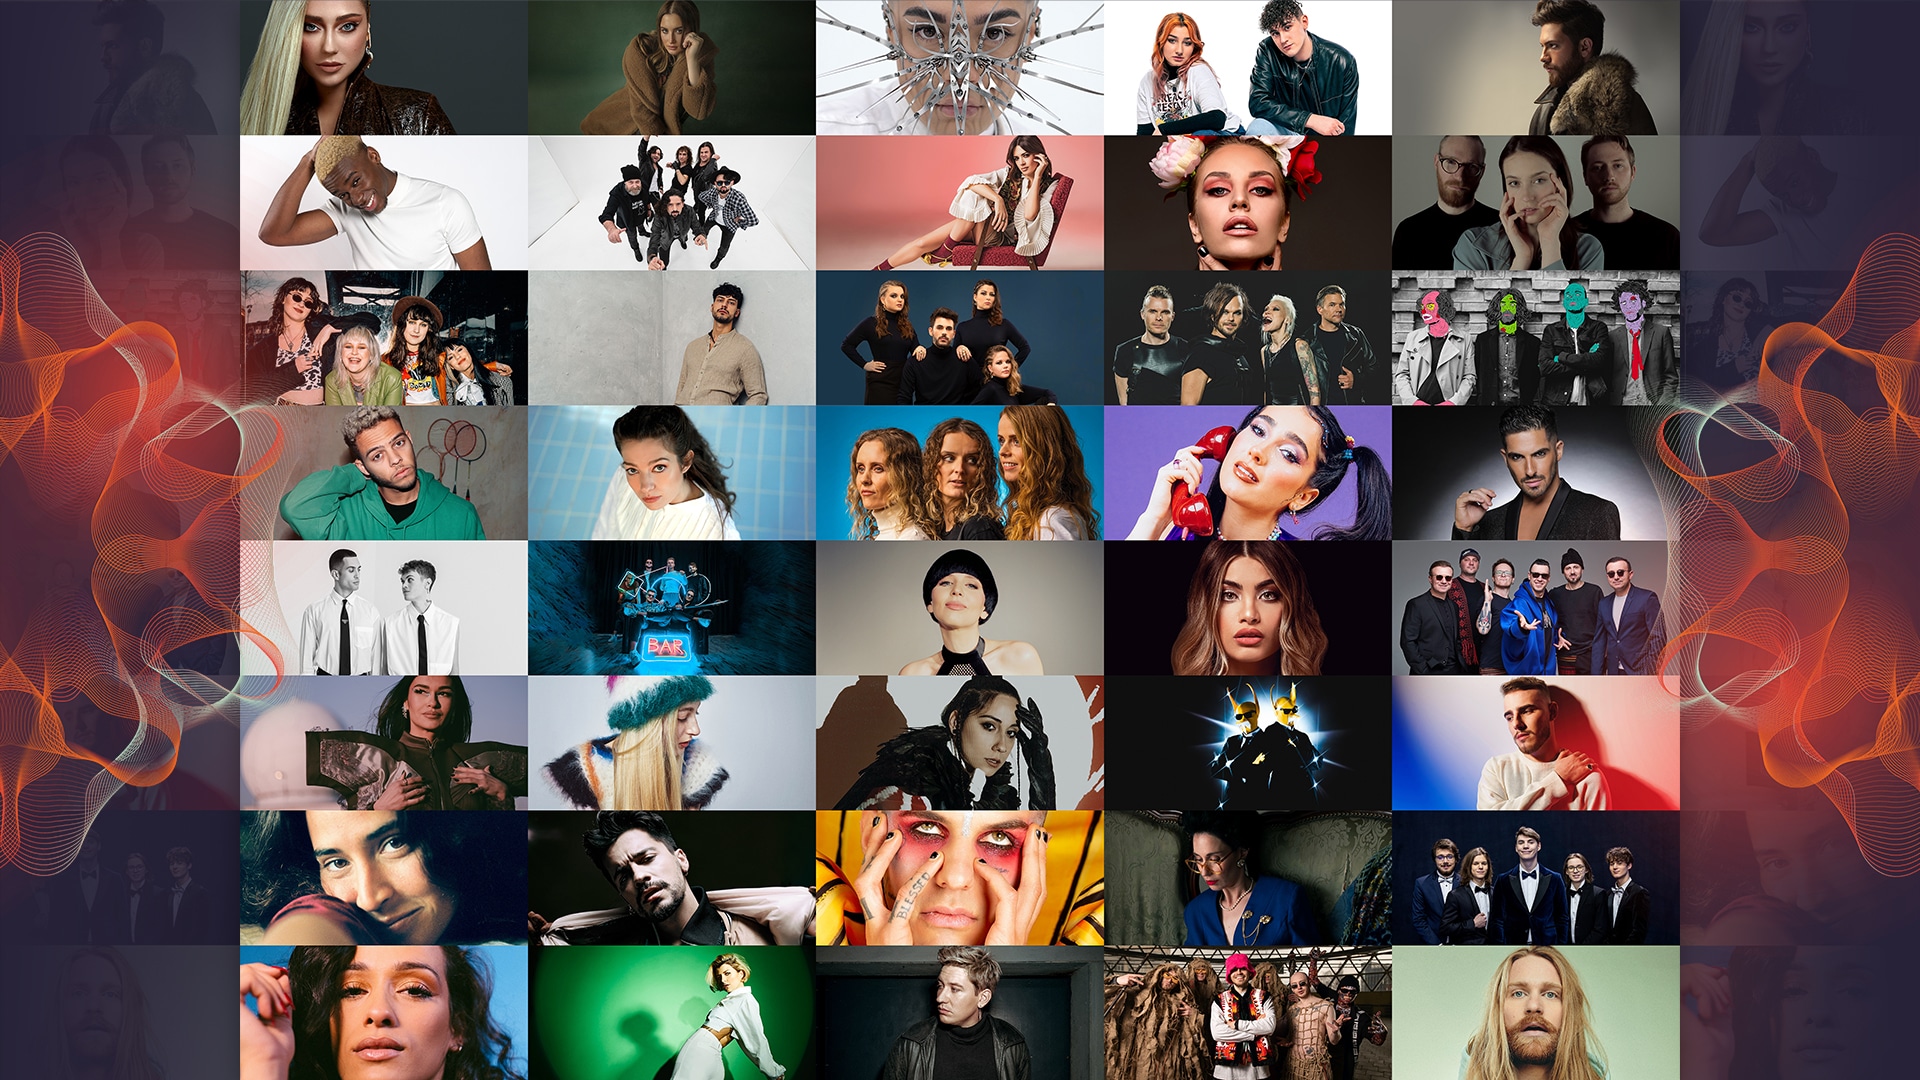 All Songs from The Show 2022 - Eurovíziós Dalfesztivál 2022 - A show összes résztvevője - OurVision Production grafikája az EBU & Eurovision.tv grafikai elemeinek felhasználásával